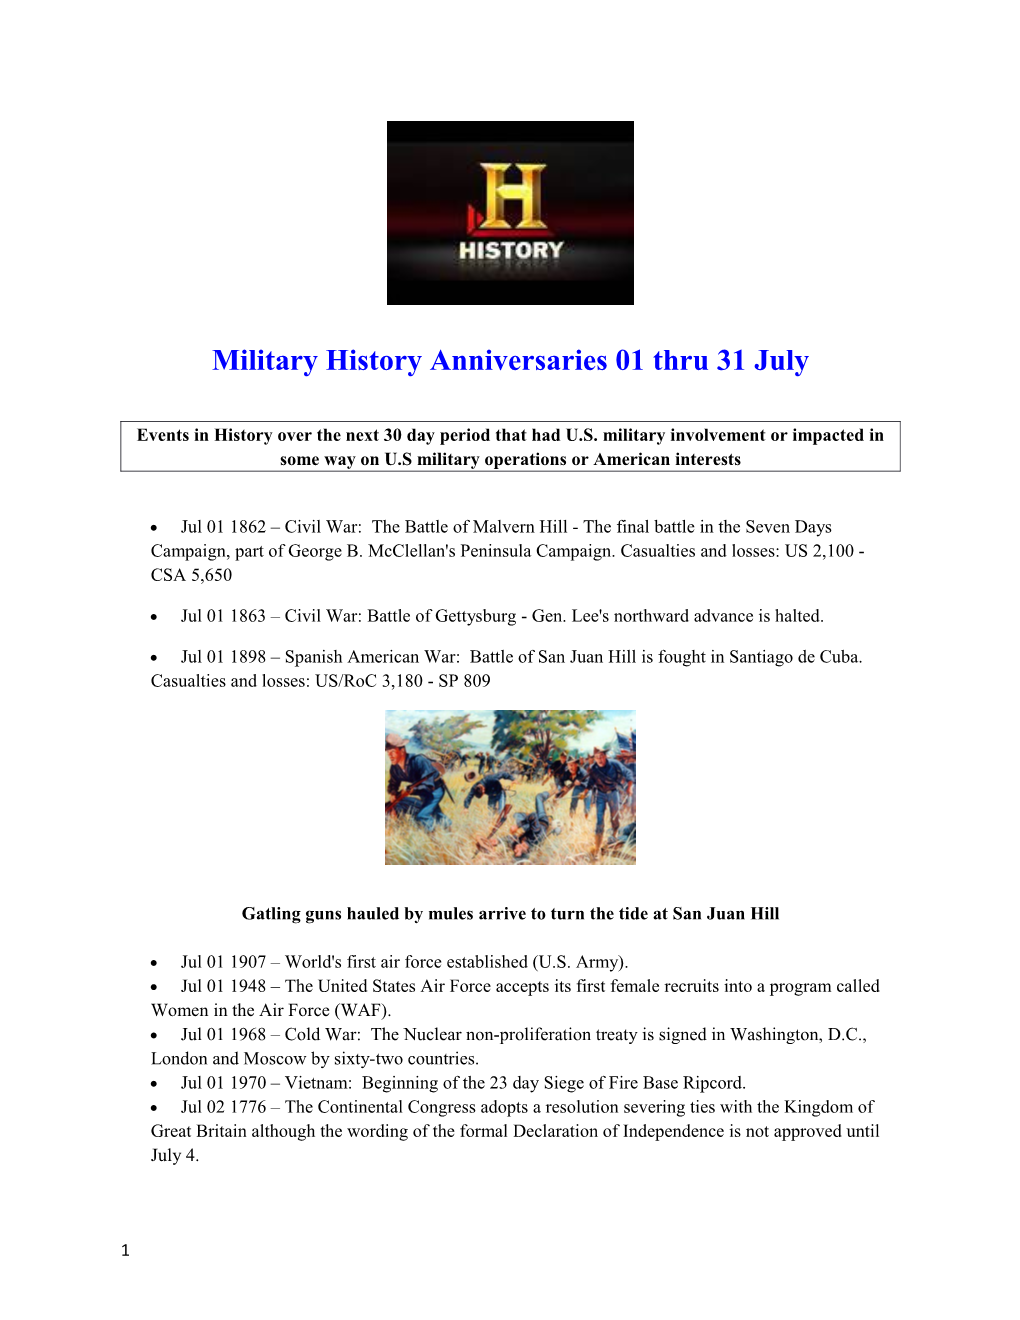 Military History Anniversaries 01 Thru 31 July